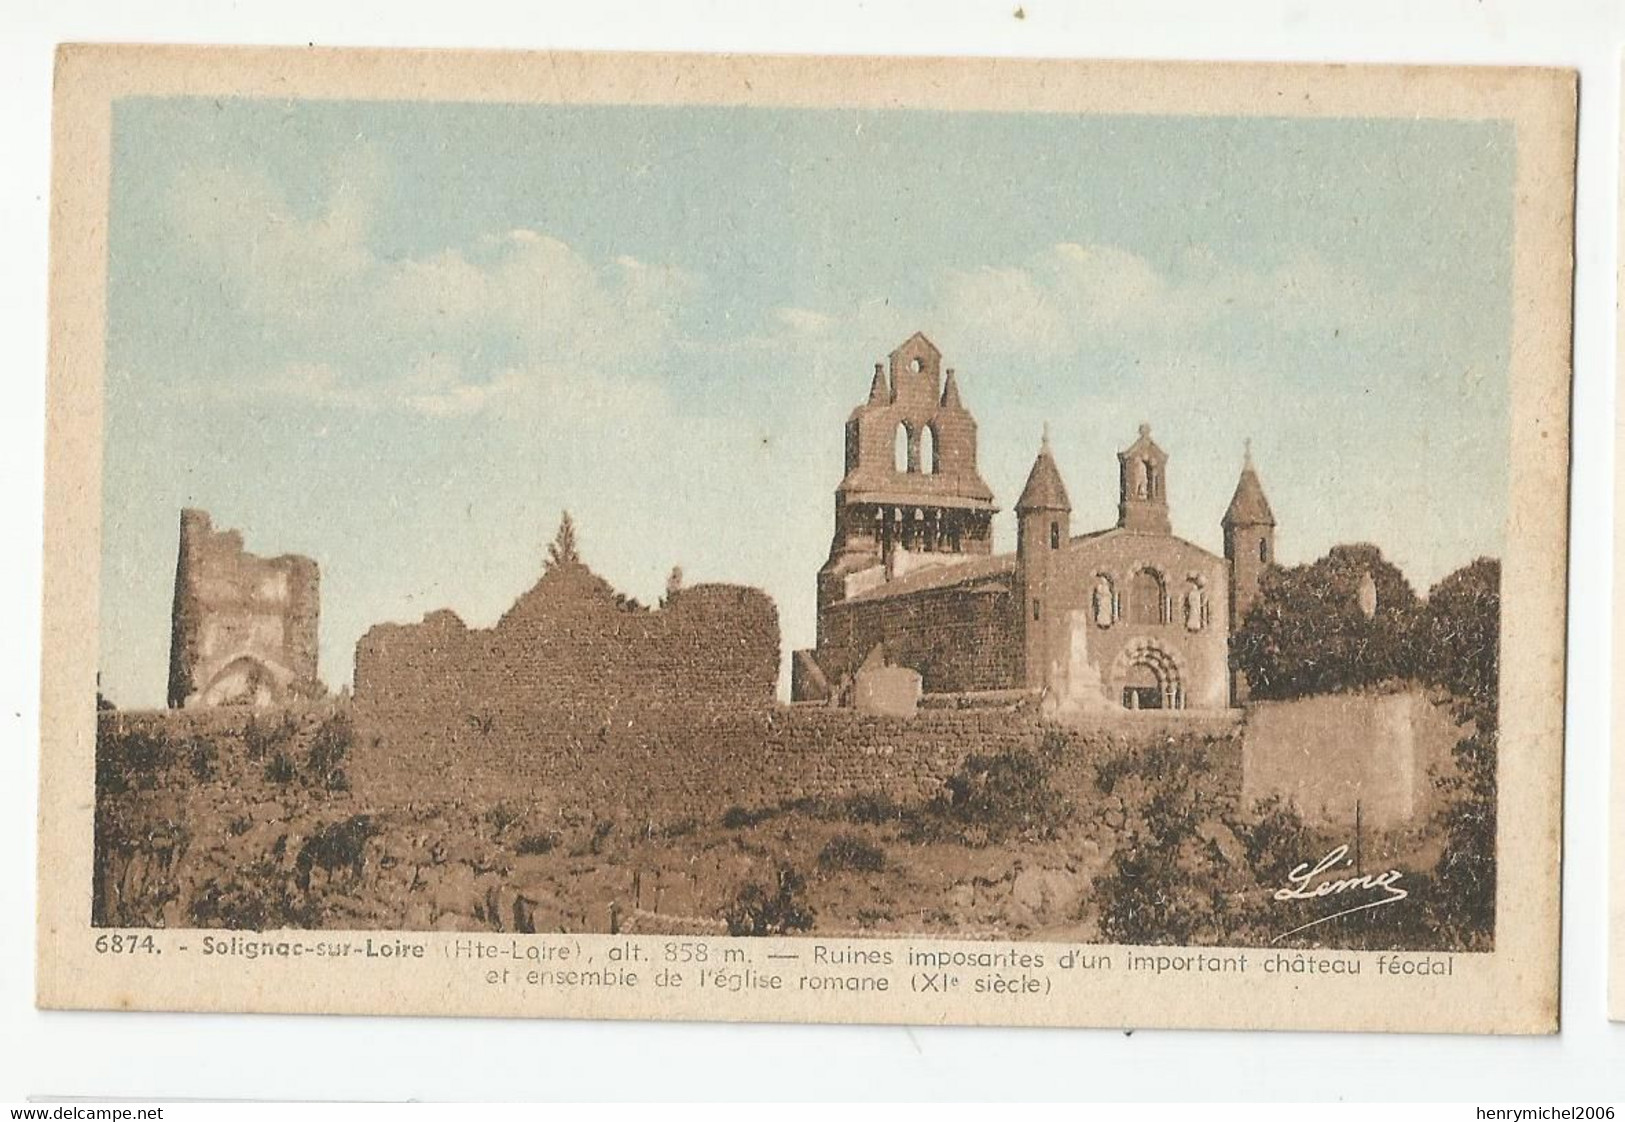 43 Solignac Sur Loire Ruines Imposantes D'un Chateau Féodal Et Ancienne église Romane - Solignac Sur Loire